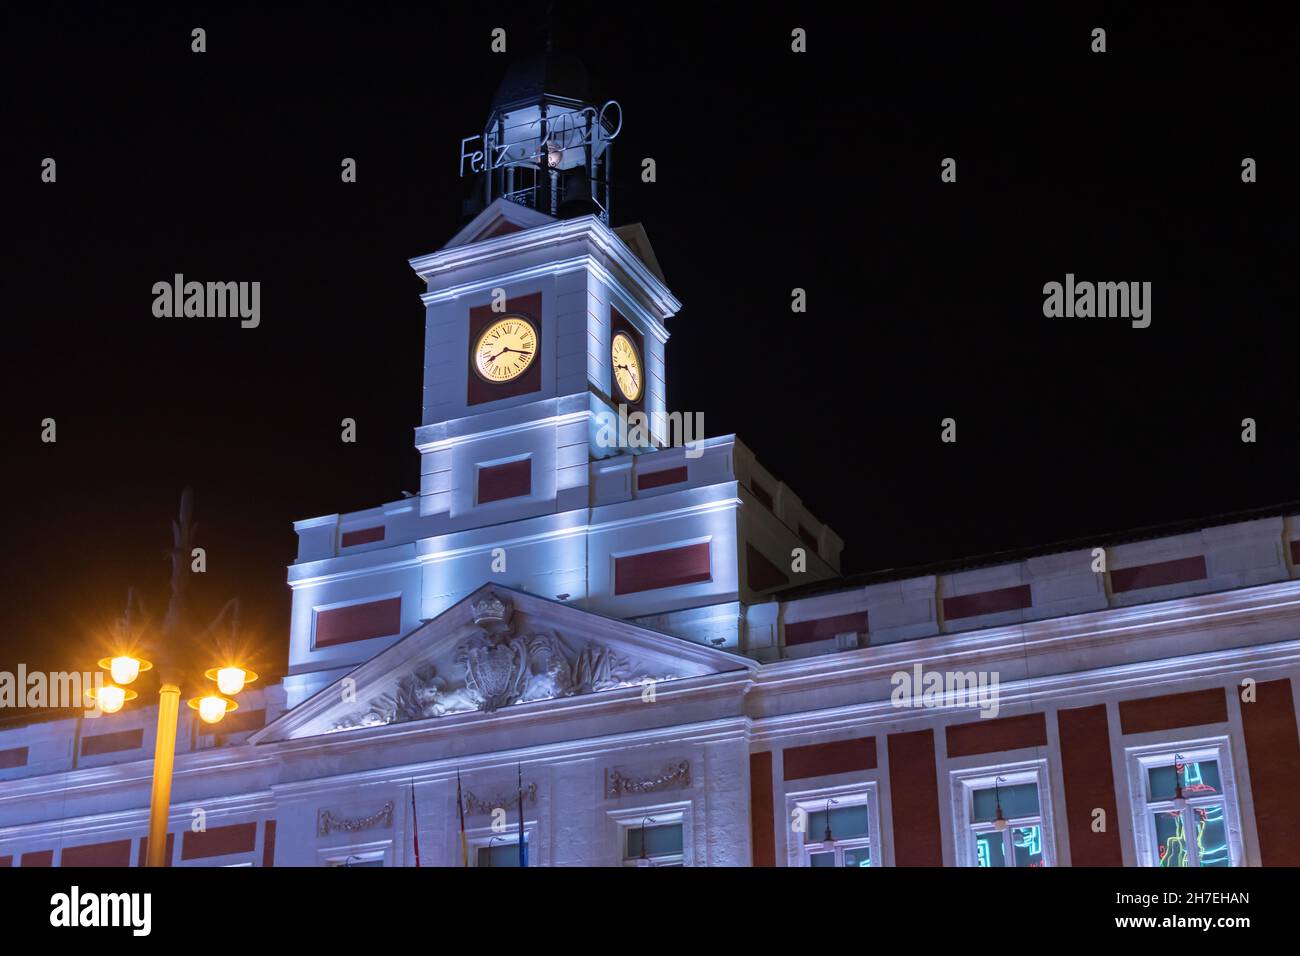 Reloj puerta del sol fotografías e imágenes de alta resolución - Alamy